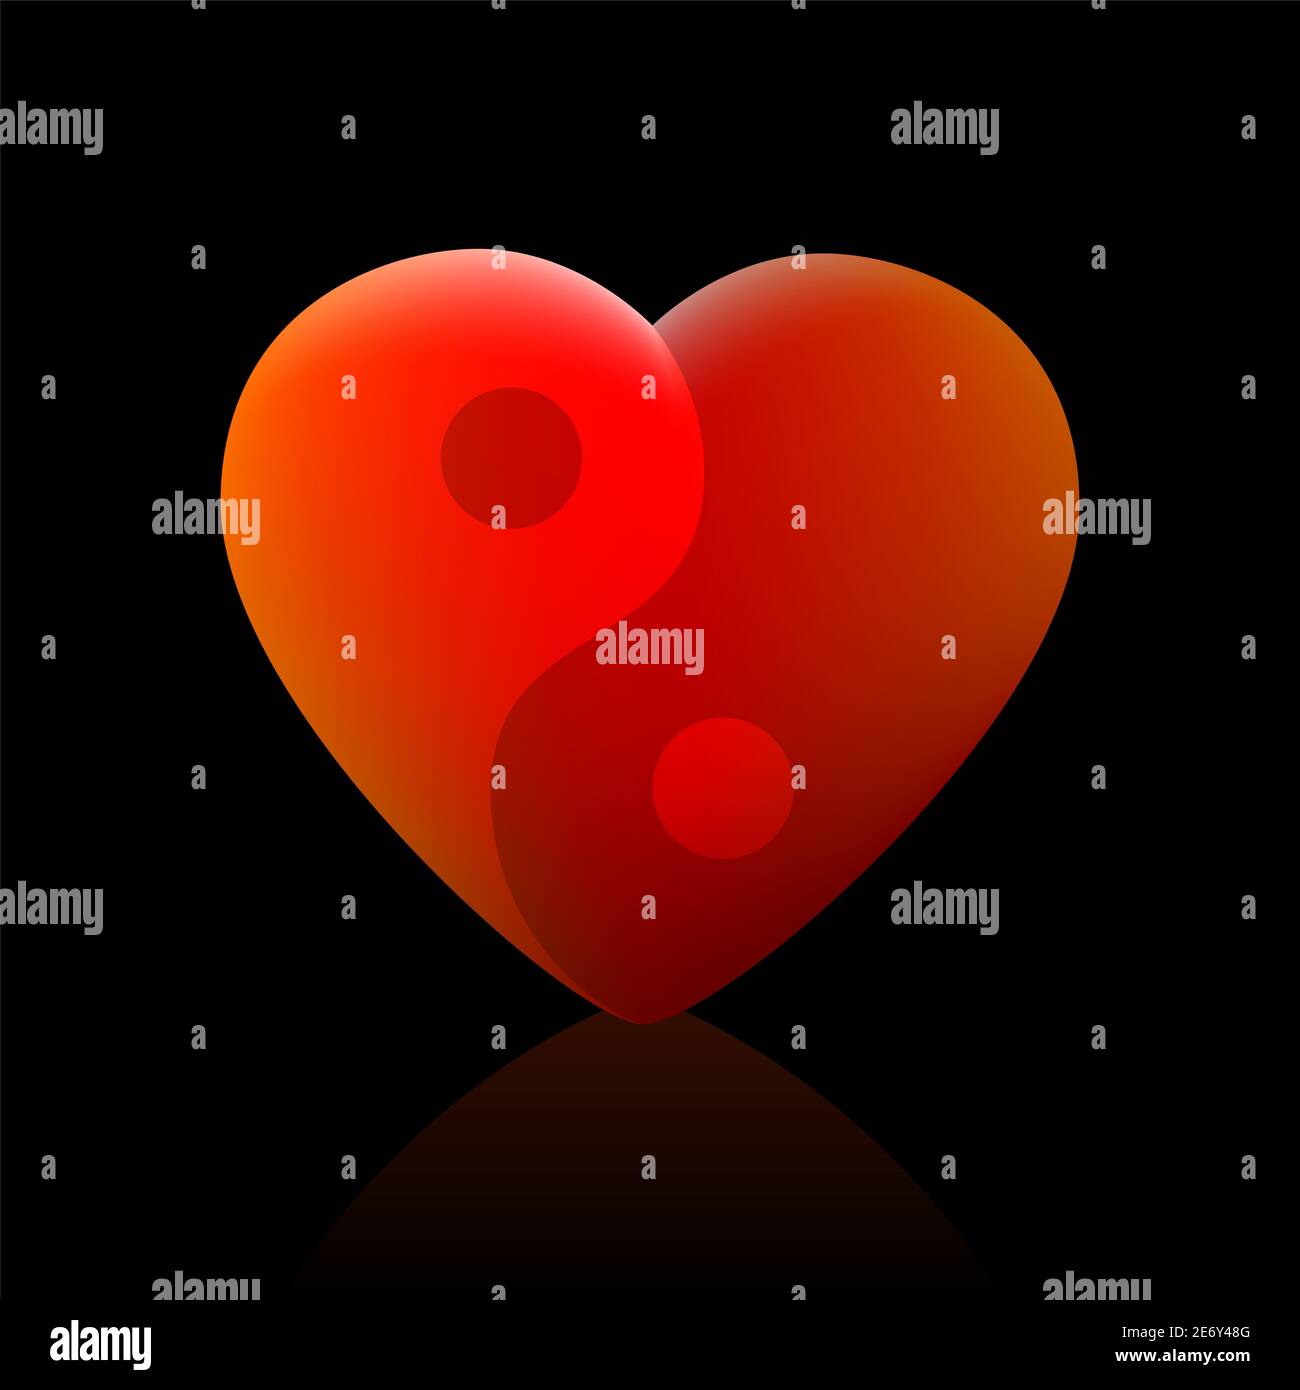 Símbolo Yin Yang con corazón. Simbólico para el amor, la salud, el equilibrio, la armonía, la espiritualidad, la paz y la serenidad - ilustración sobre fondo negro. Foto de stock